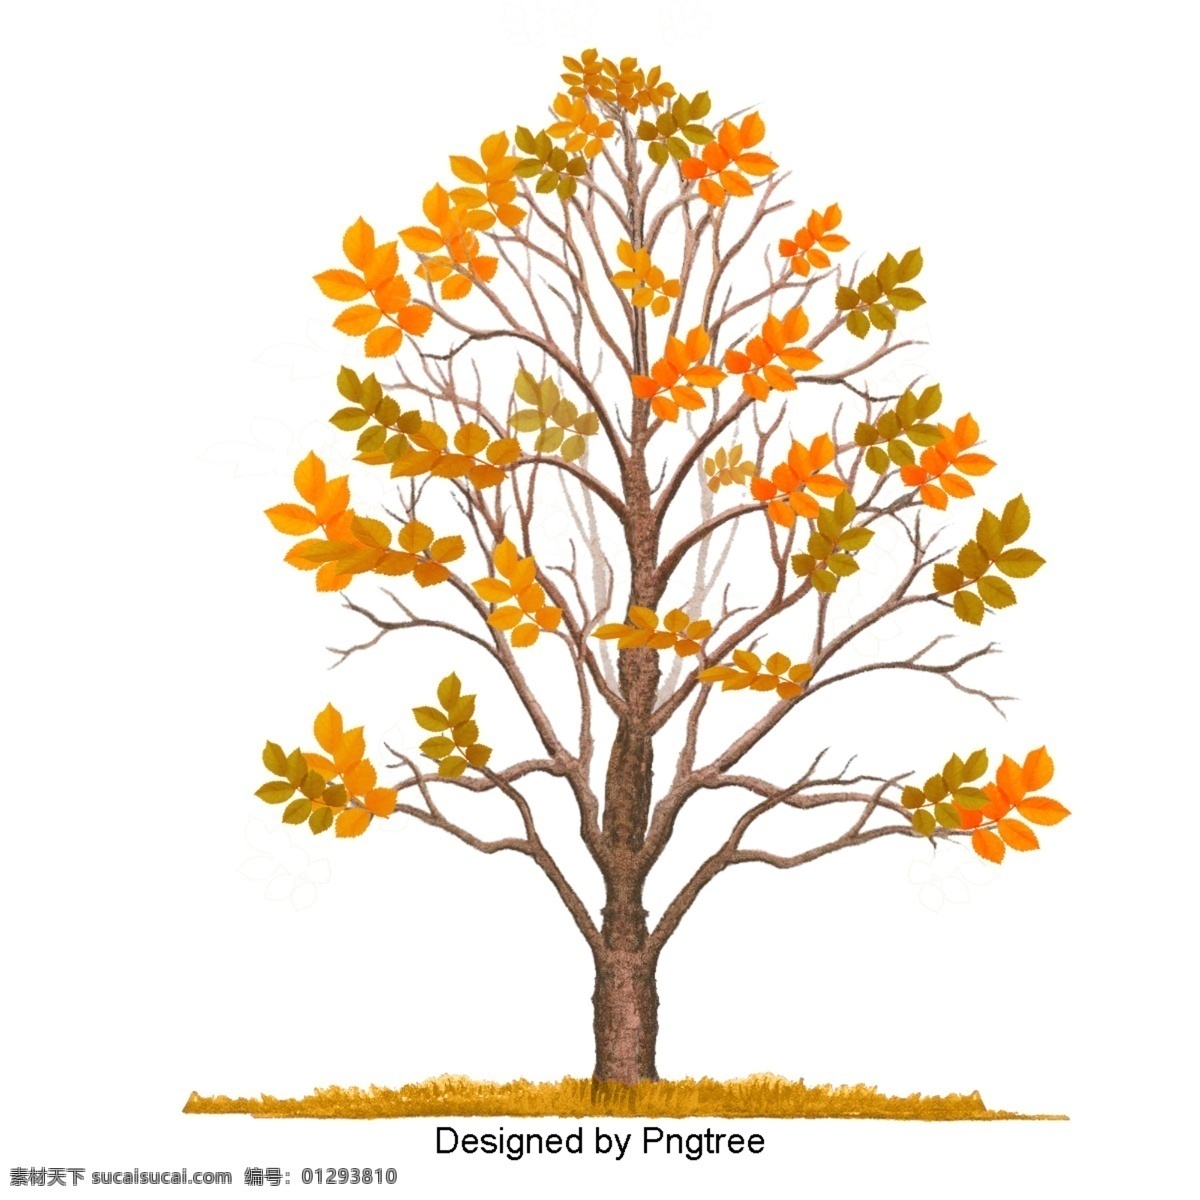 卡通 手绘 秋季 元素 绘画 艺术 插图 自然 植物 季节 秋天 树叶